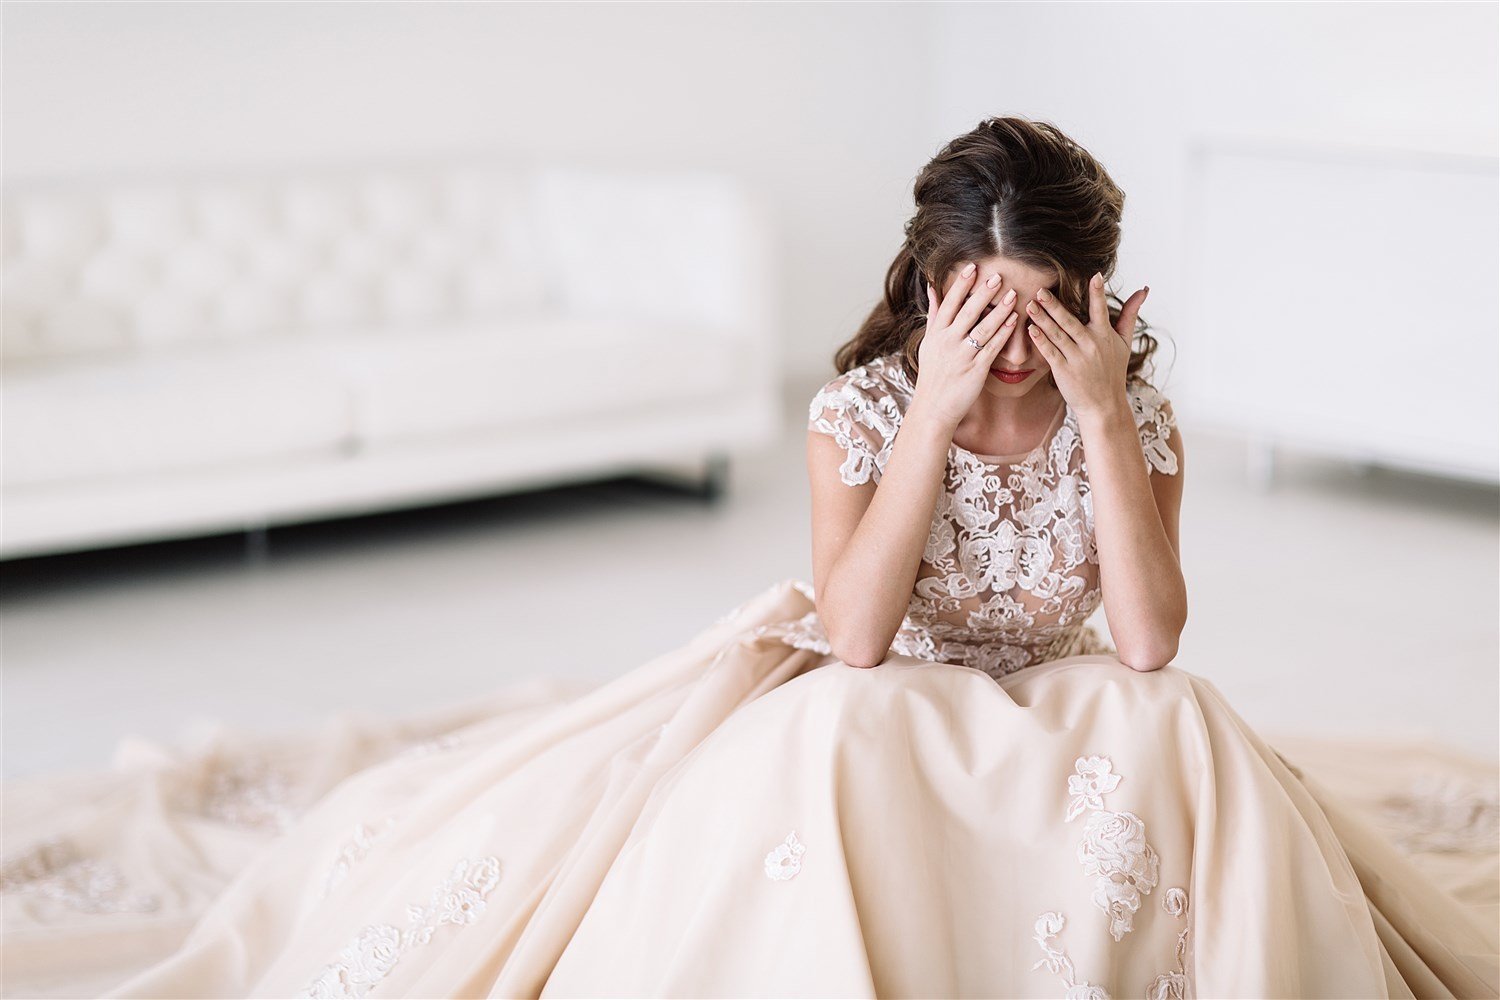 لا تستهيني بدلالات رؤيا العروس غير السعيدة في المنام! - أنوثة - Ounousa | موقع الموضة والجمال للمرأة العربية